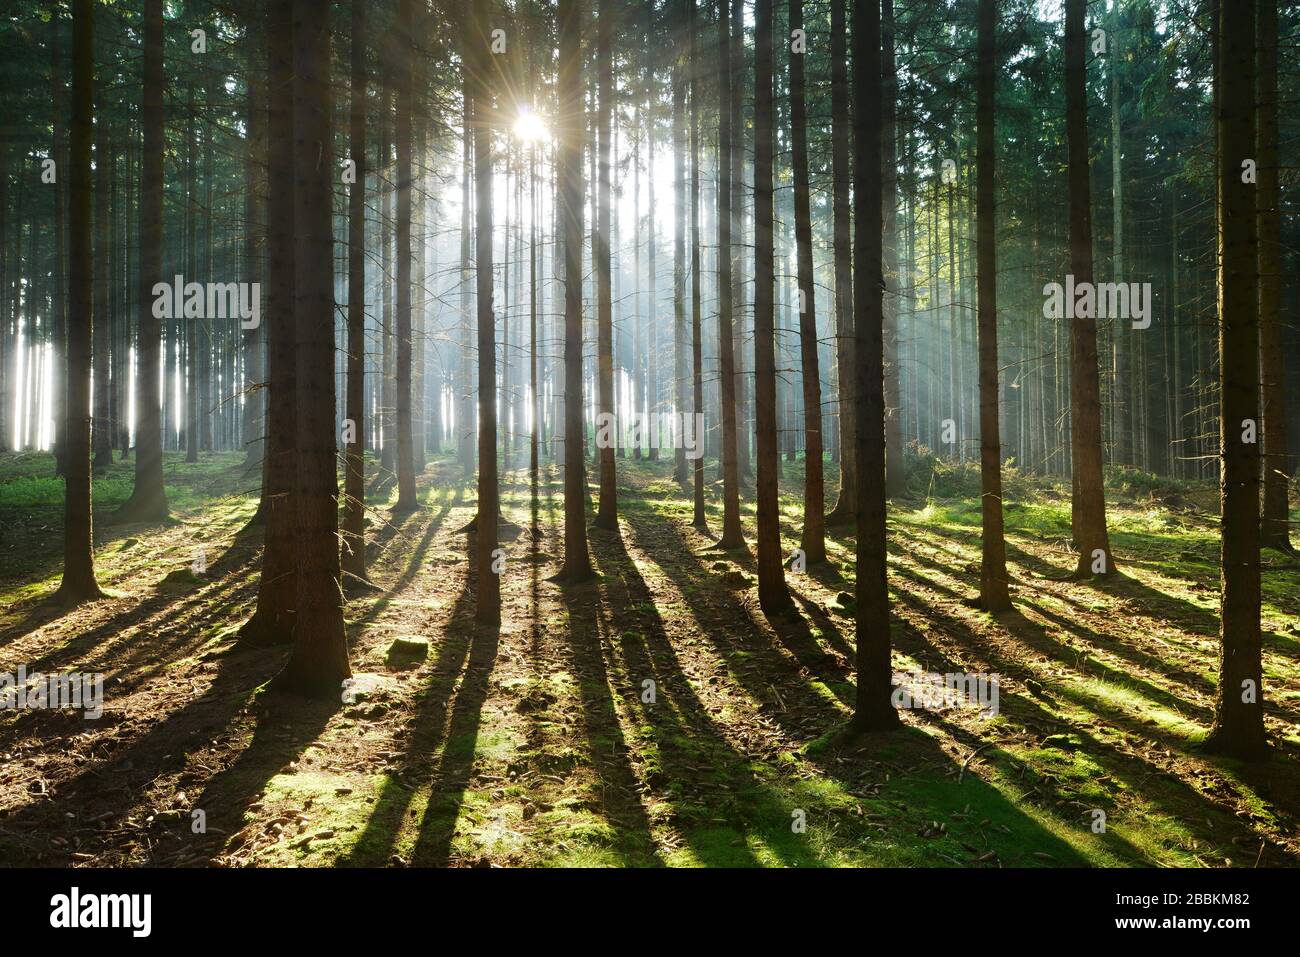 Lichtdurchfluteter Fichtenwald, Sonne scheint, lange Schatten auf dem Waldboden, Thüringer Schiefergebirge, bei Bad Lobenstein, Thüringen, Deutschland Stockfoto